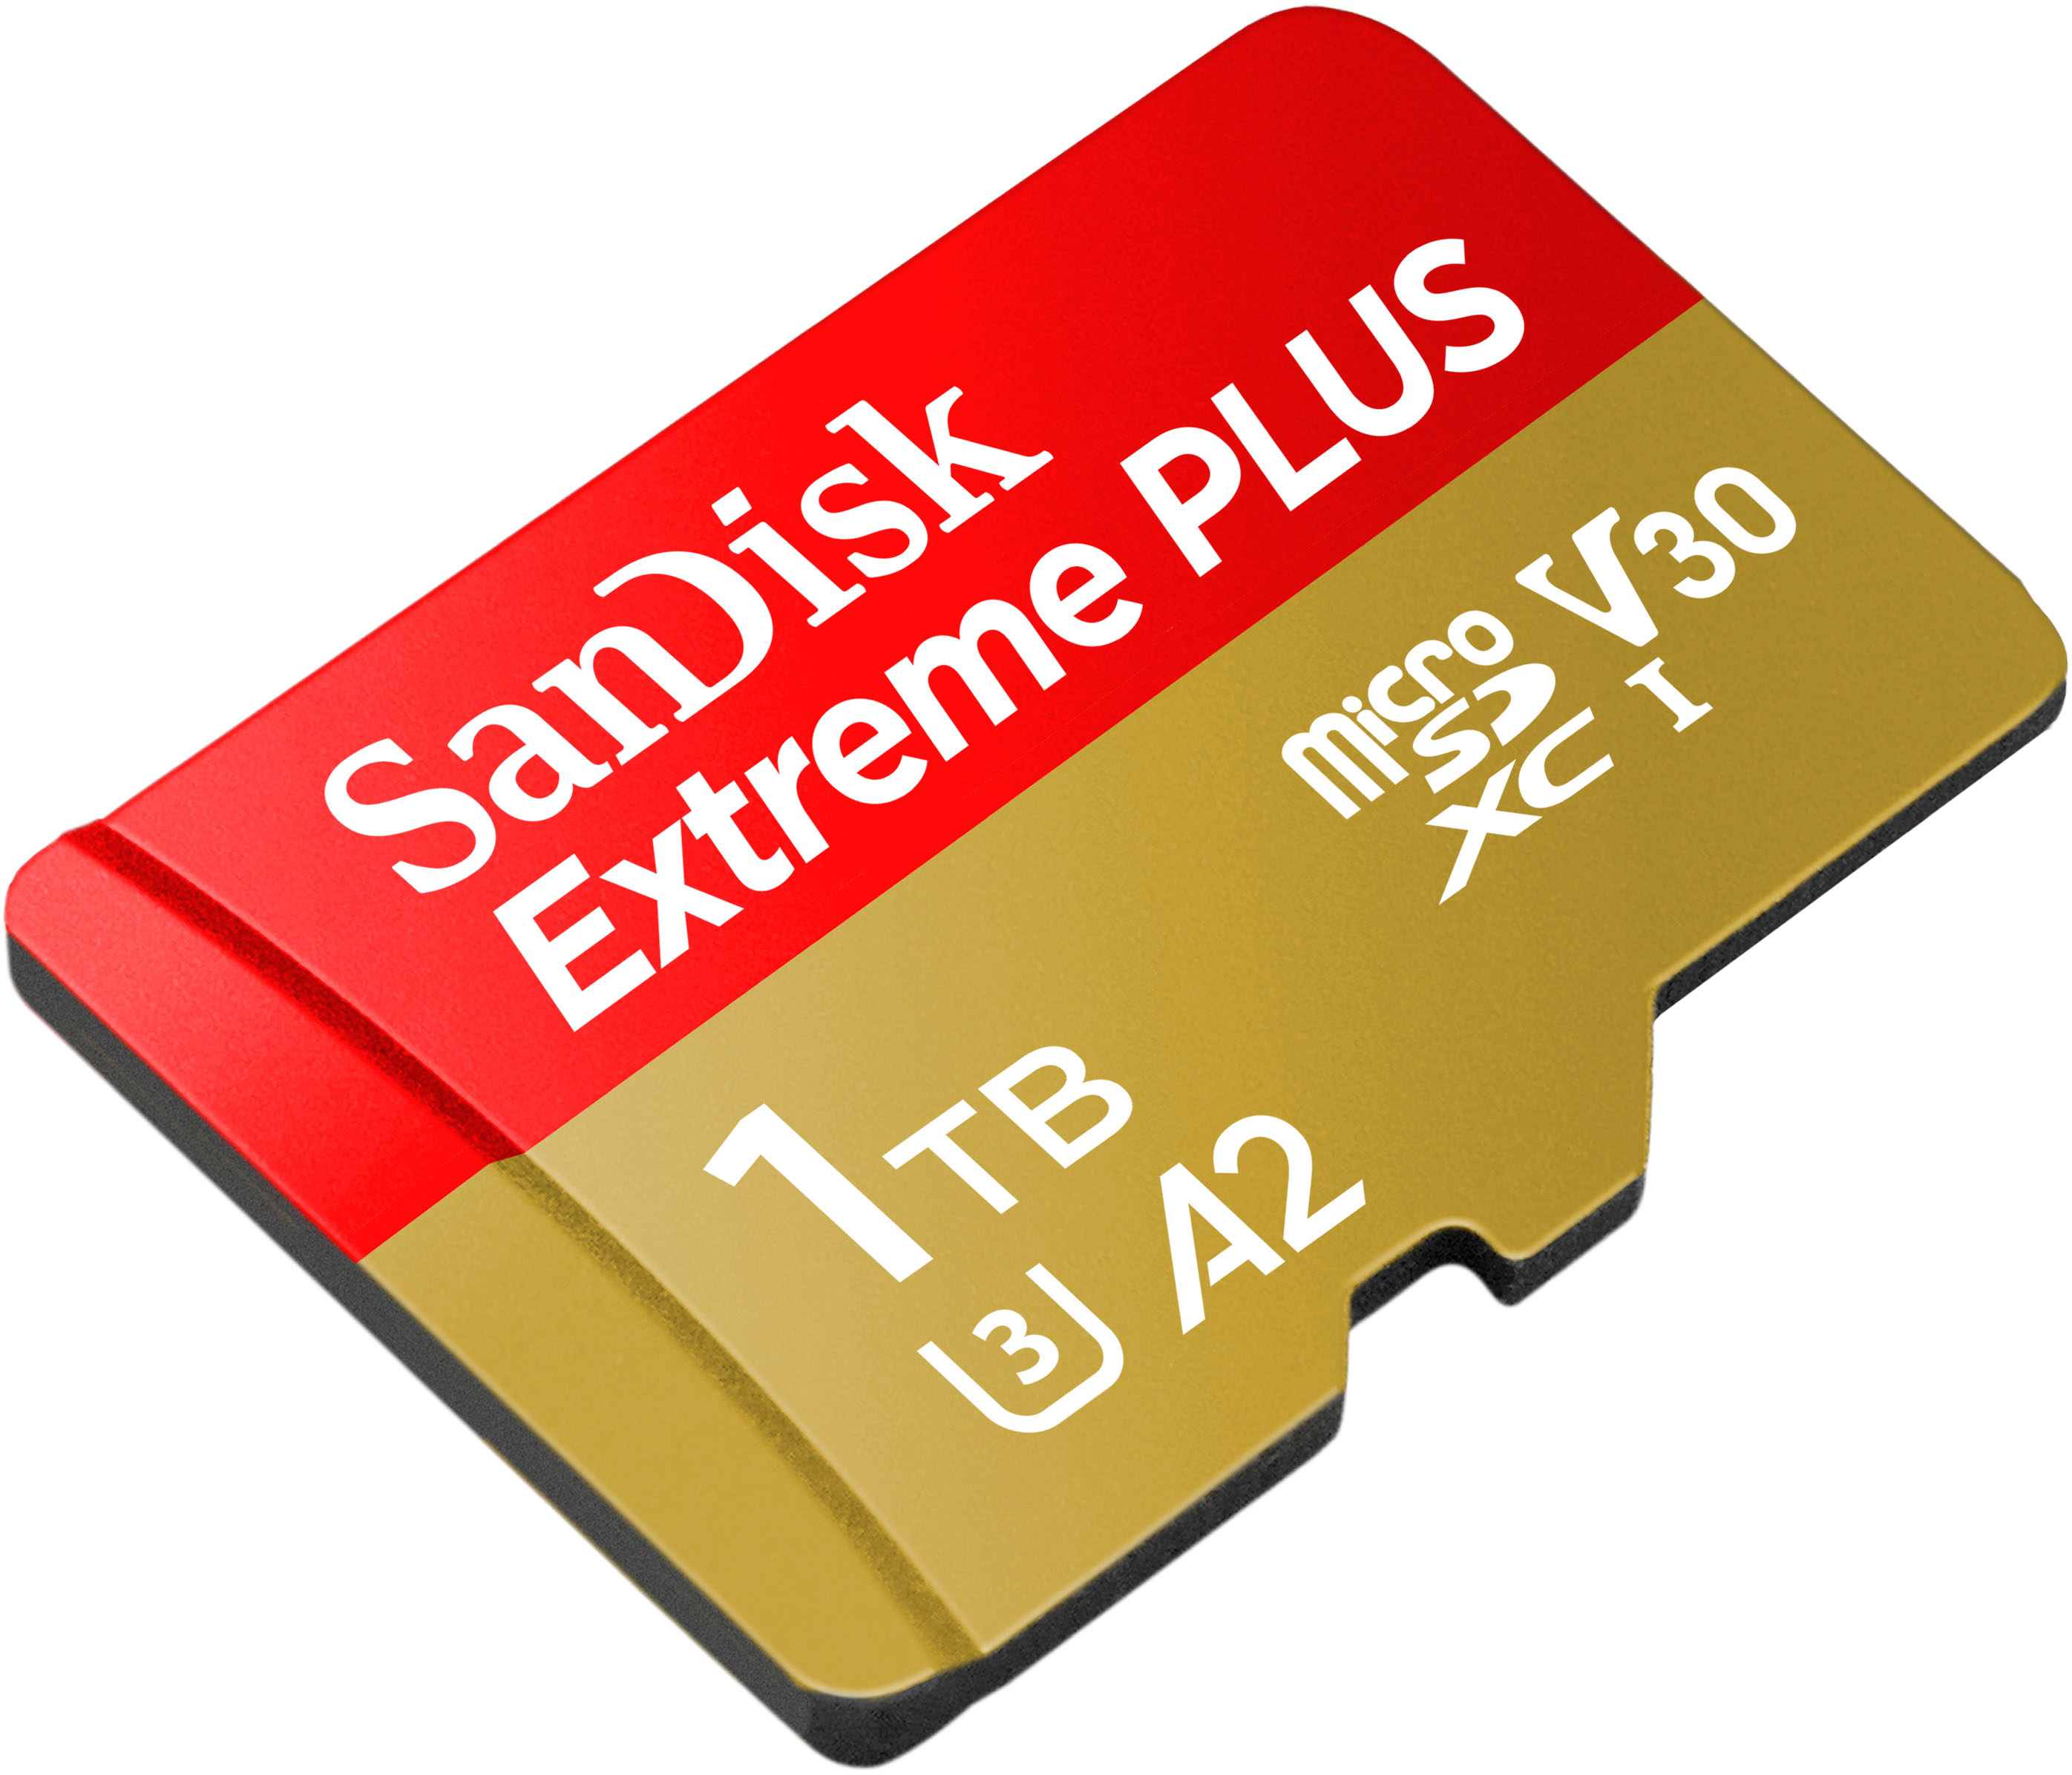 Parfaite pour les smartphones, la carte microSD SanDisk Extreme